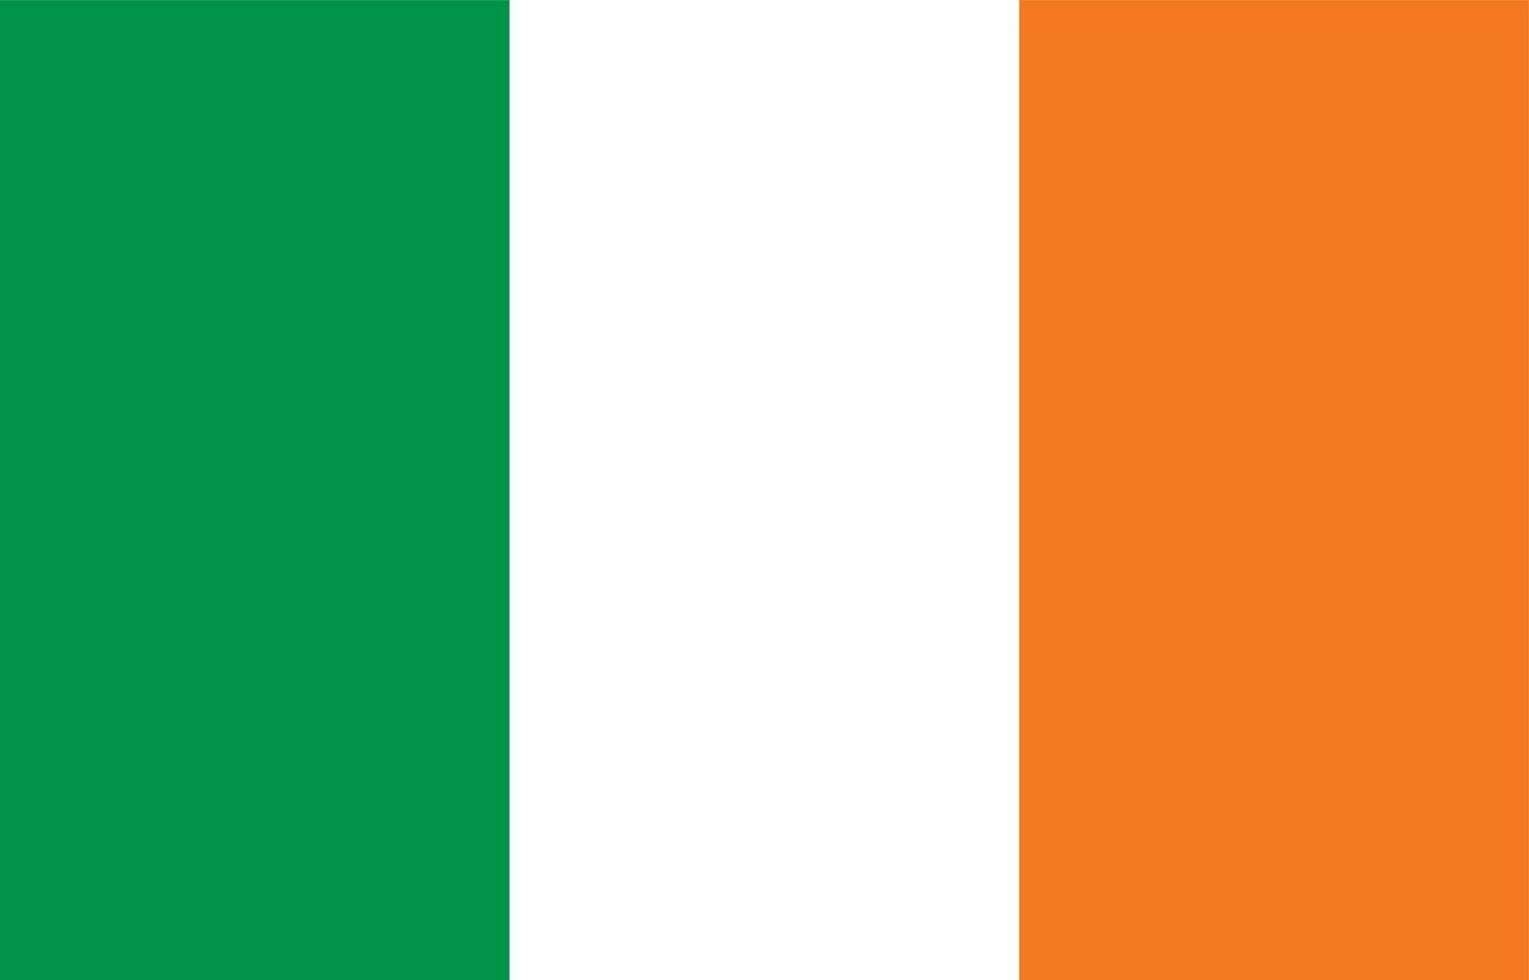 Ierland vlag vector grafisch. rechthoek Iers vlag illustratie. Ierland land vlag is een symbool van vrijheid, patriottisme en onafhankelijkheid.